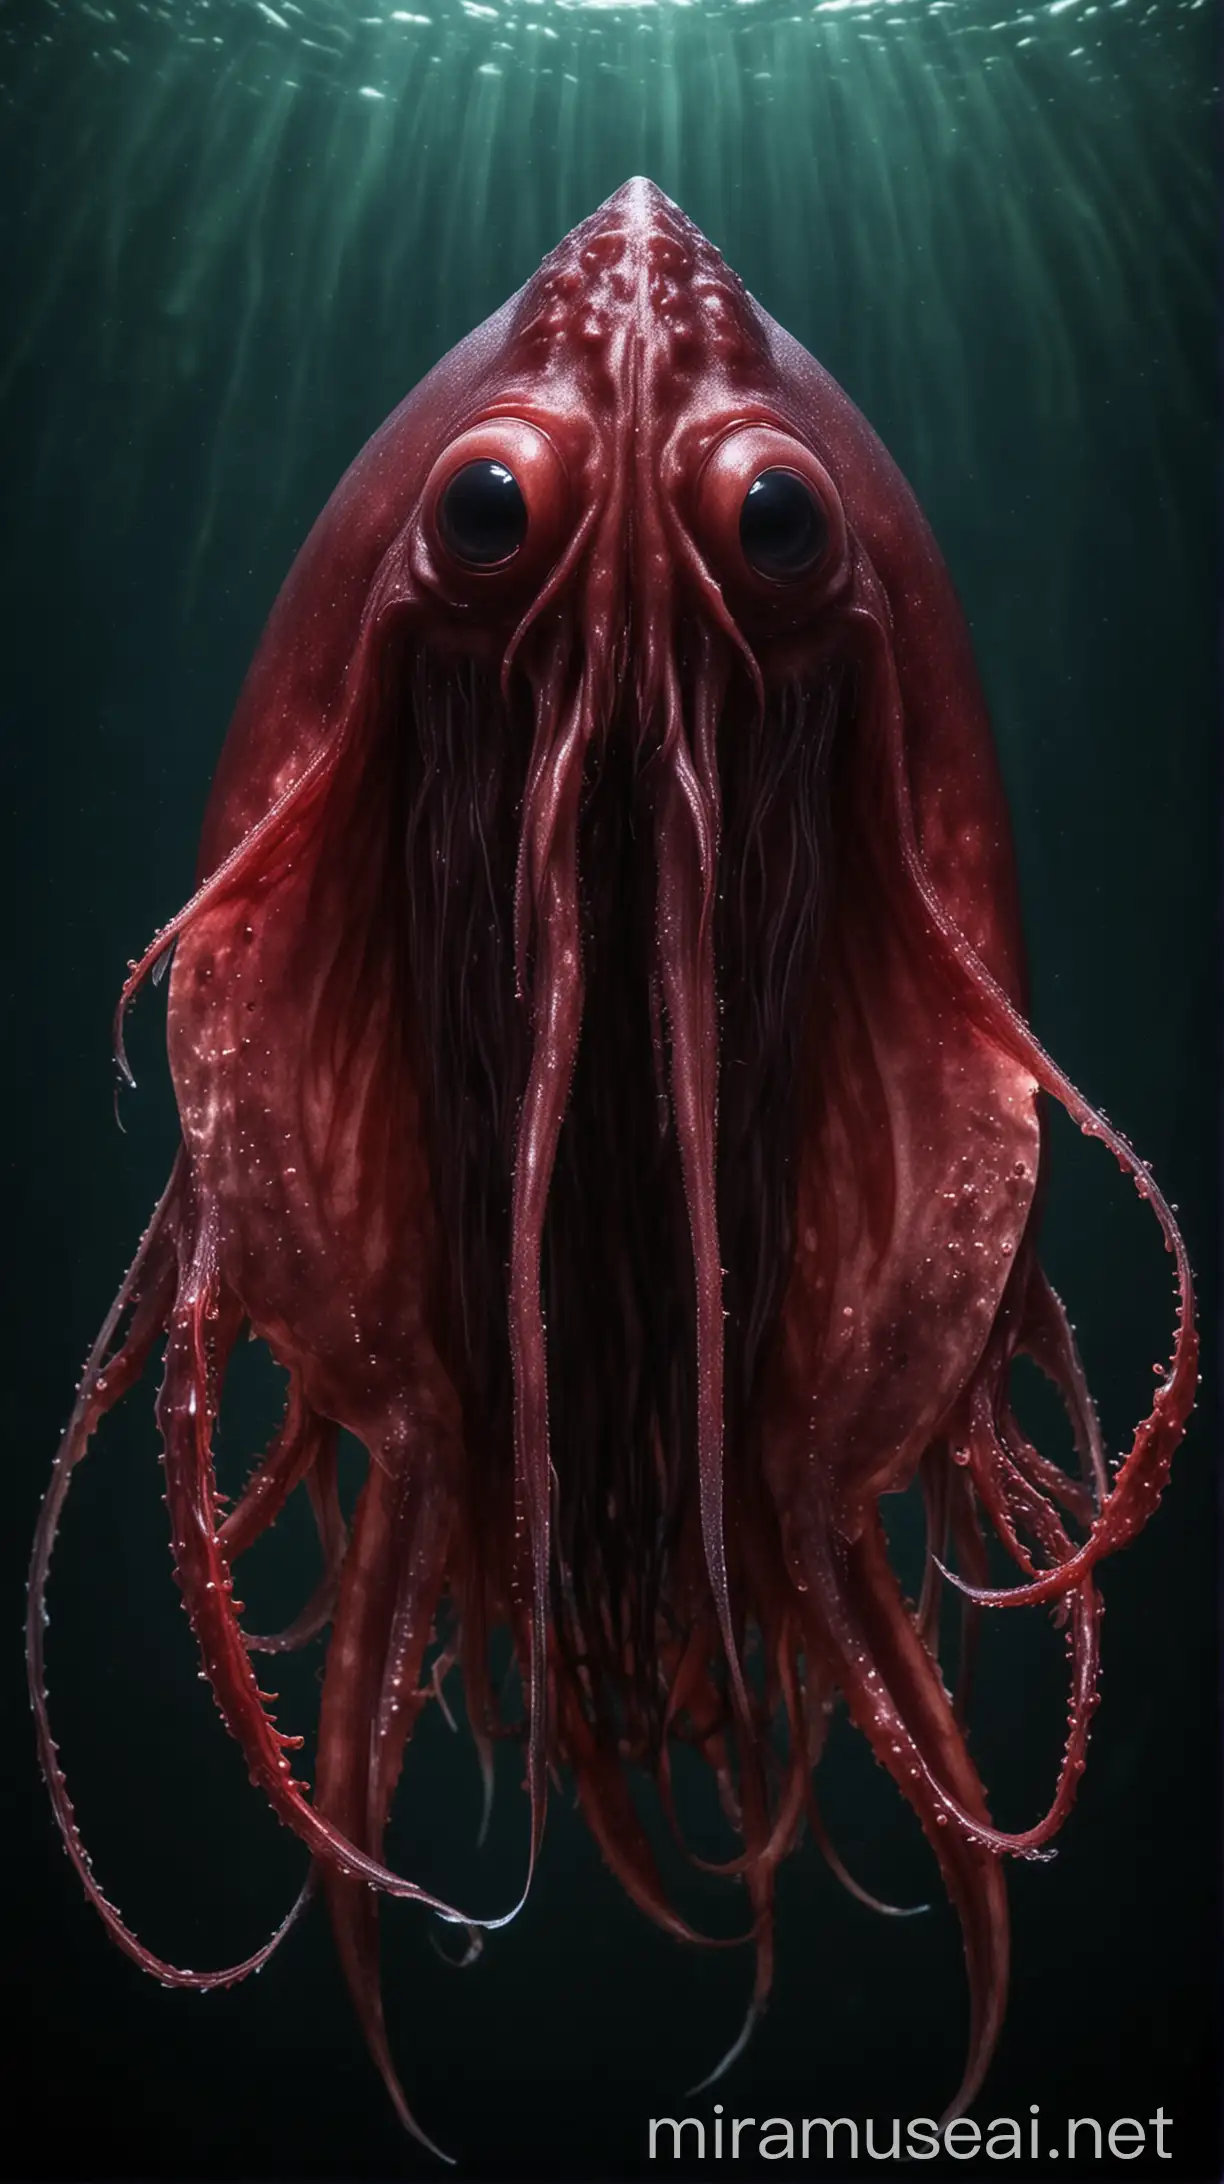 Sinister Vampire Squid in Dark Waters